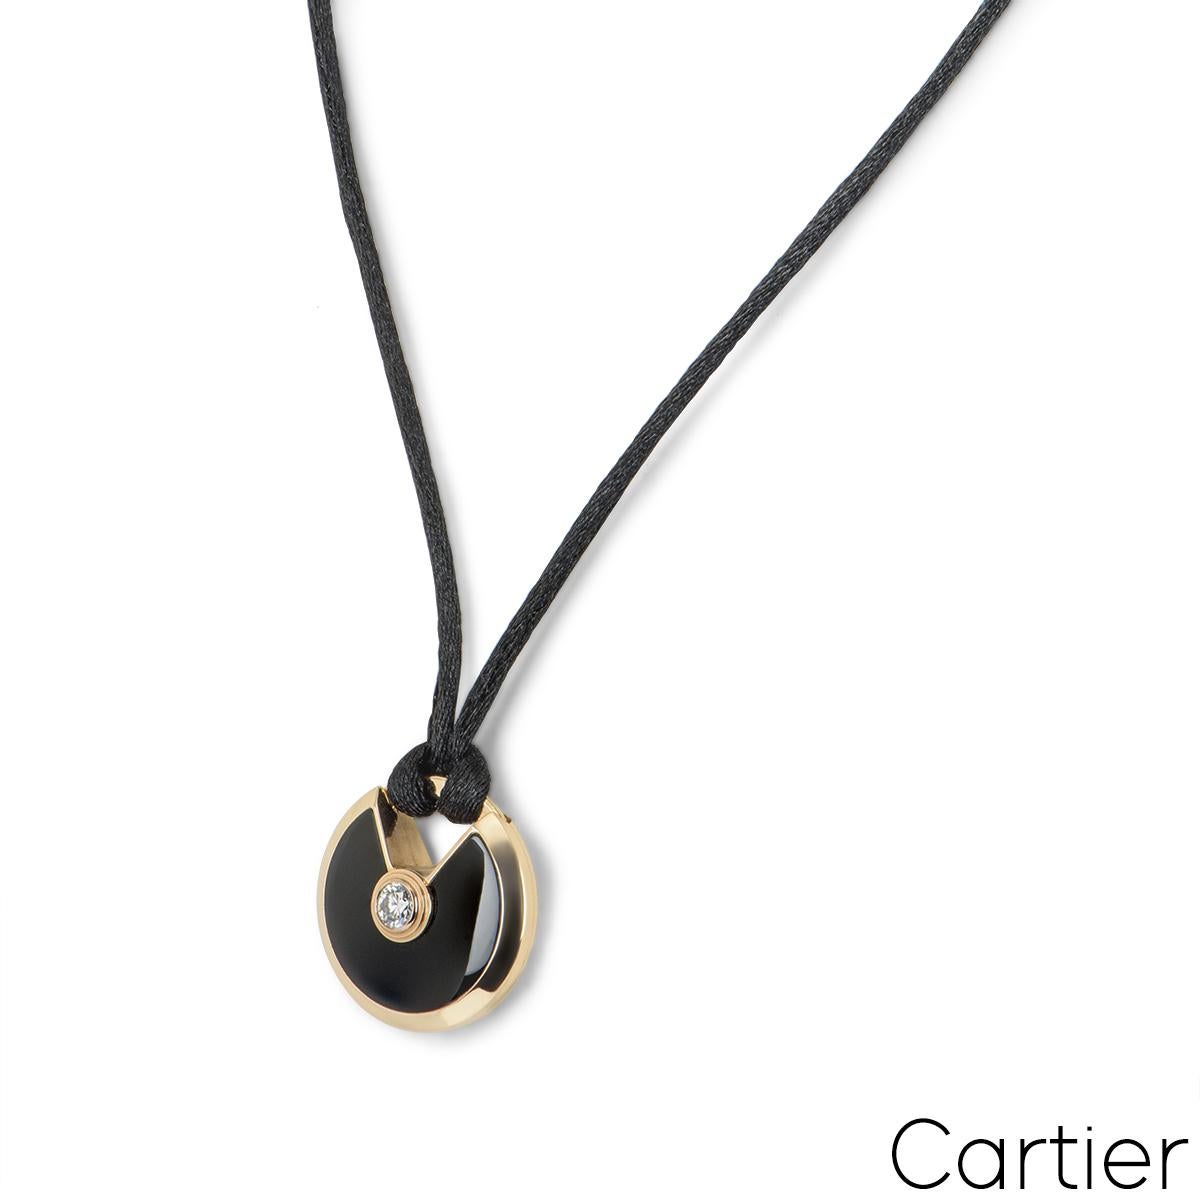 Ein Cartier-Anhänger aus 18 Karat Roségold aus der Collection Amulette de Cartier. Der Anhänger besteht aus einem kreisrunden Talisman, der mit Onyx besetzt ist und durch einen einzelnen runden Brillanten von 0,09 Karat in einer Reibefassung ergänzt